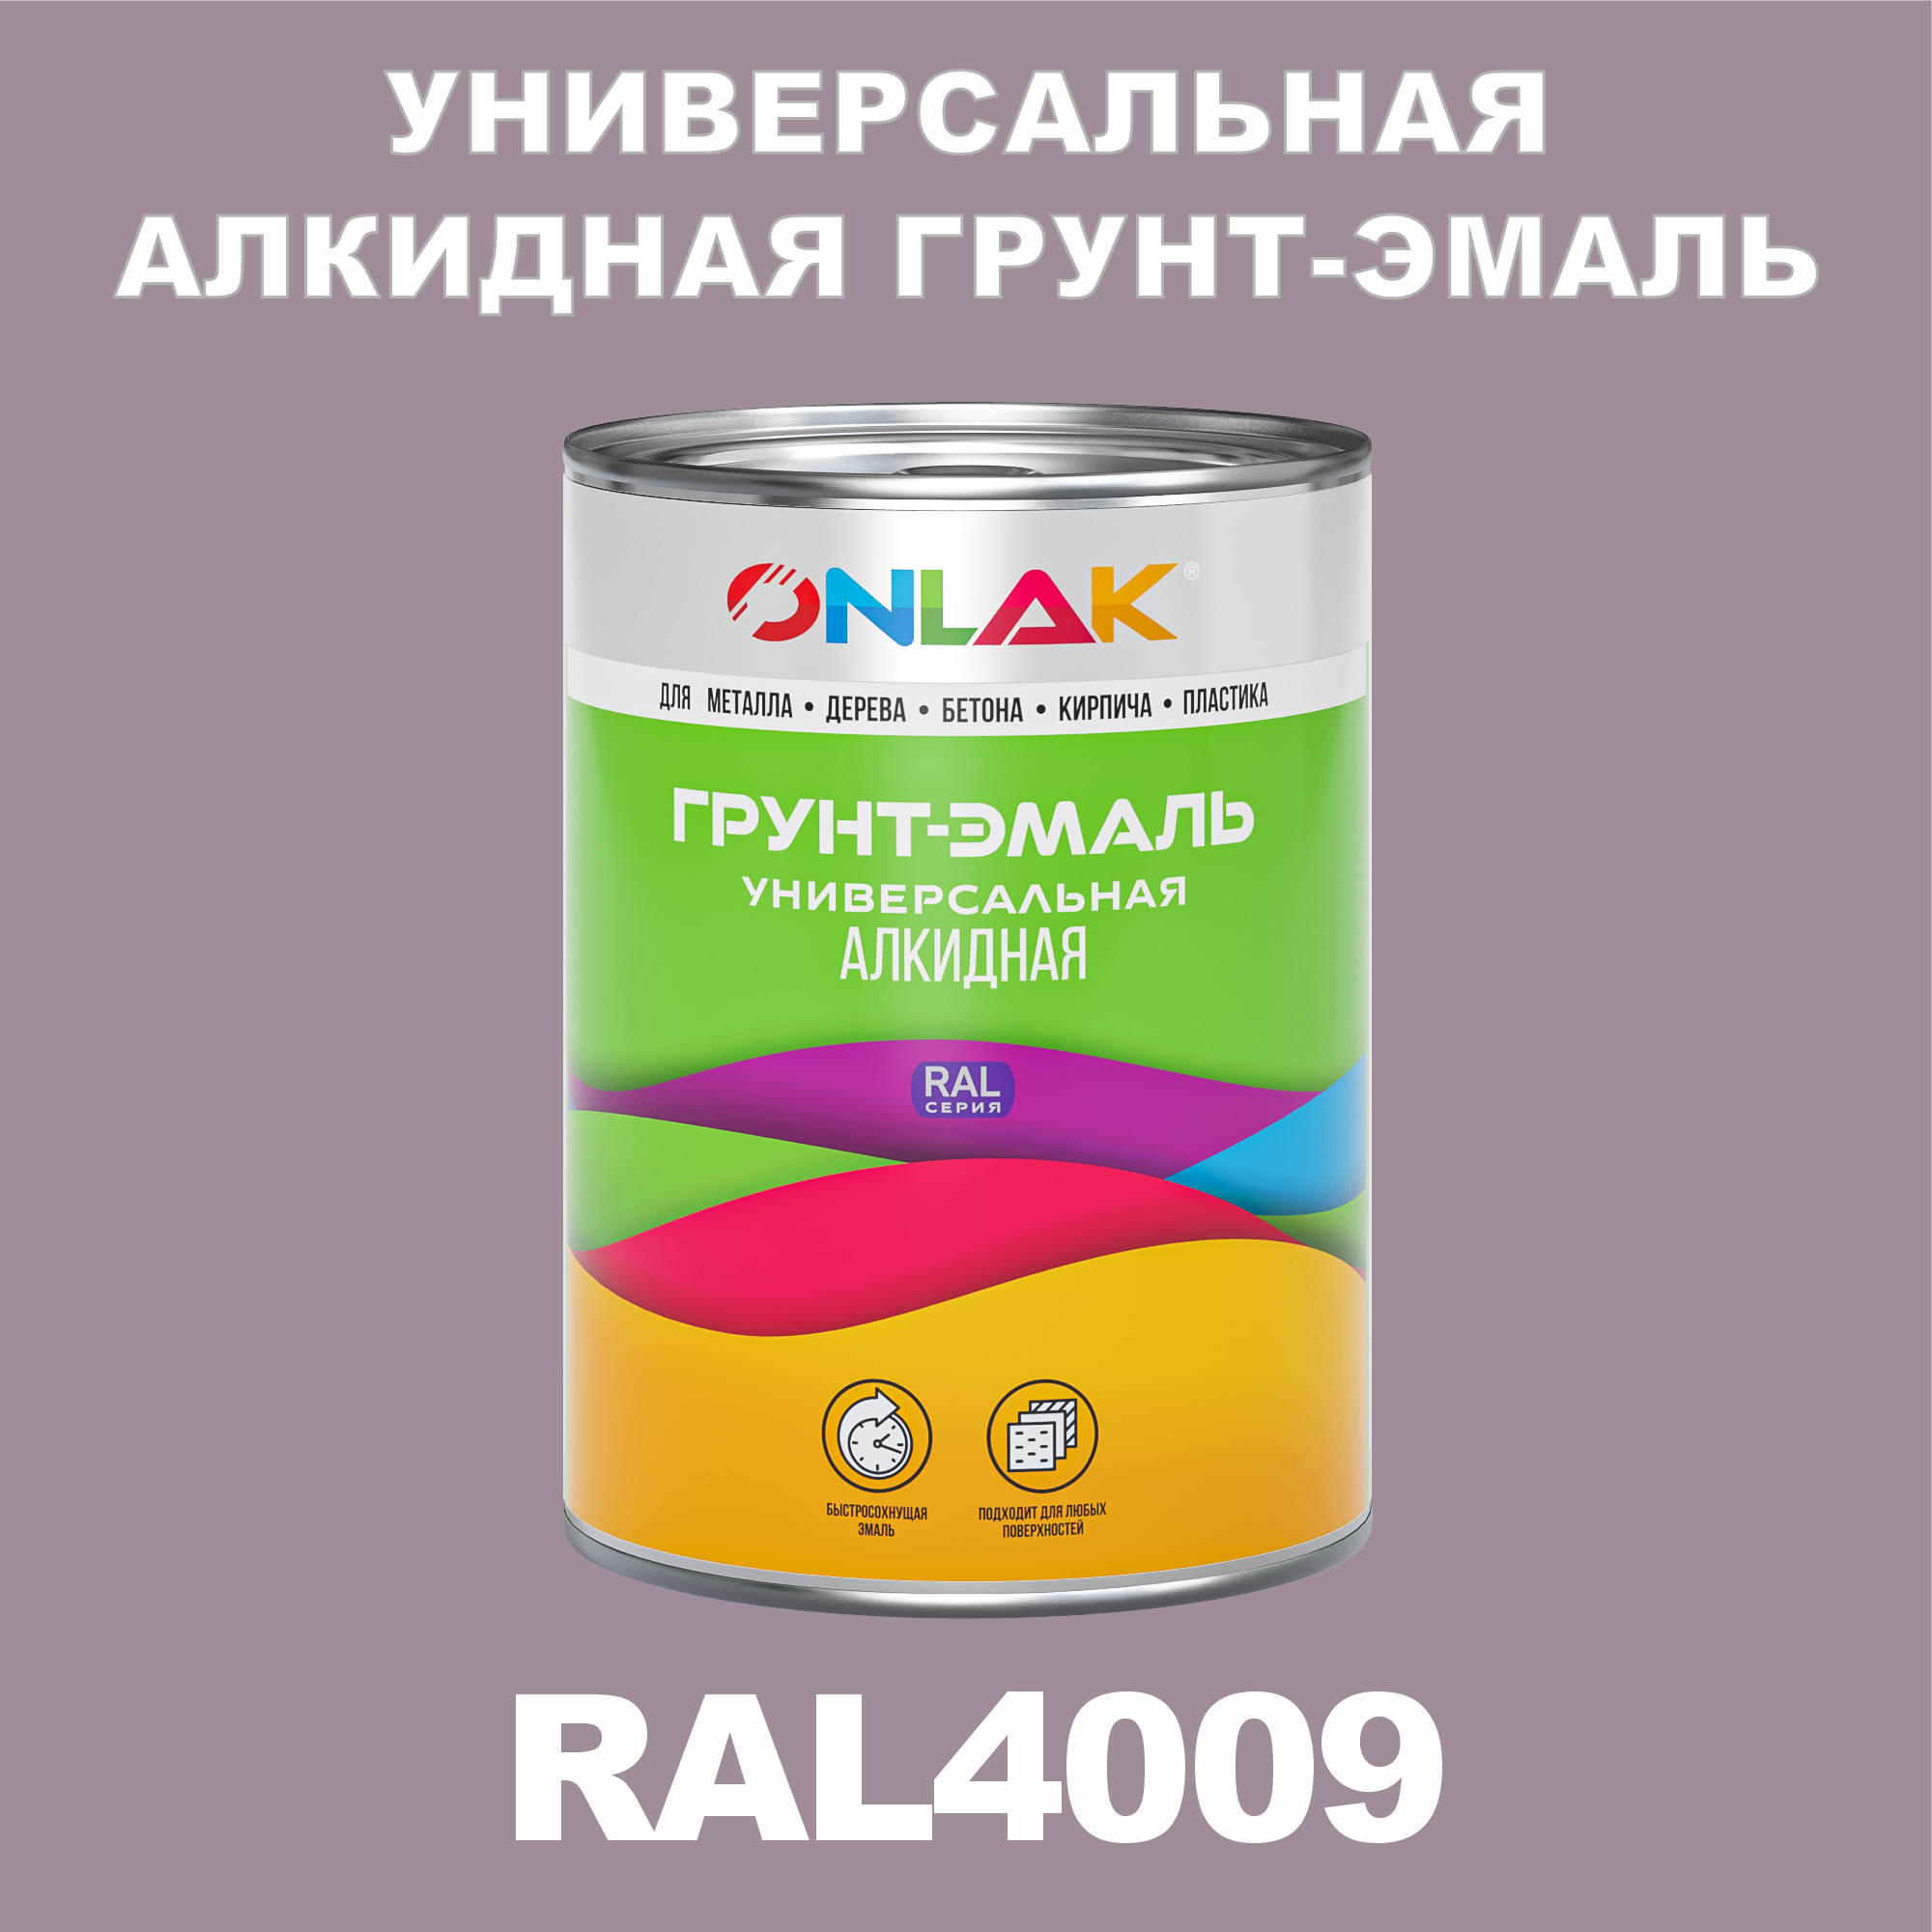 Грунт-эмаль ONLAK 1К RAL4009 антикоррозионная алкидная по металлу по ржавчине 1 кг грунт эмаль yollo по ржавчине алкидная синяя 0 9 кг